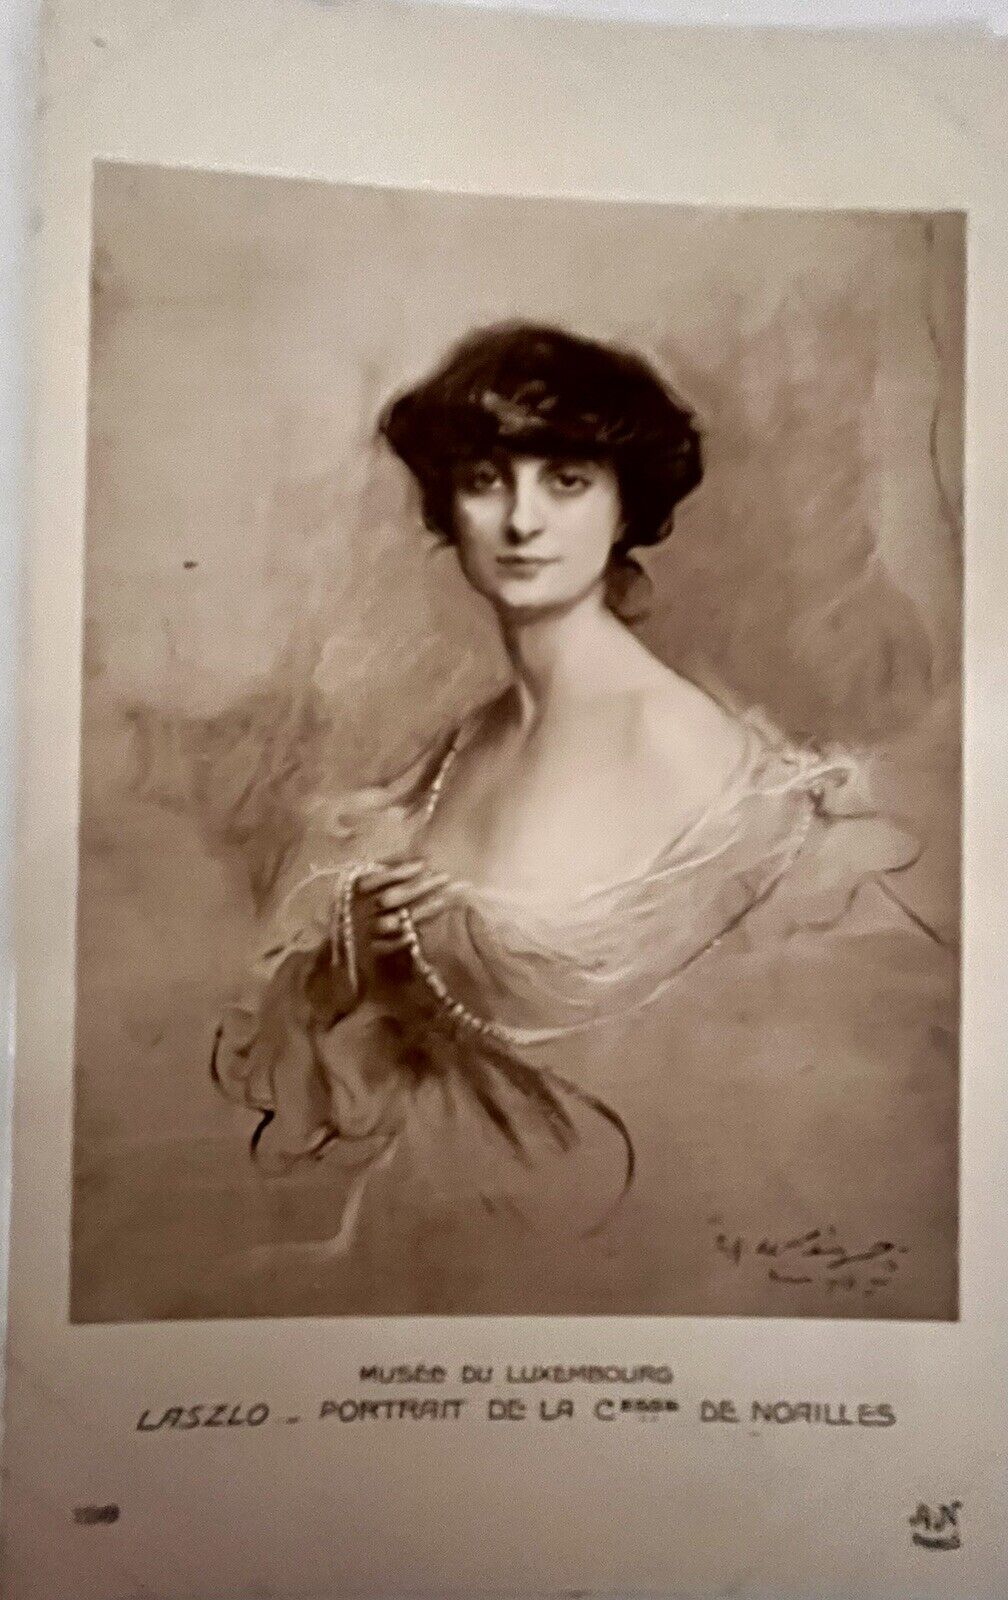 Postcard France Artist LASZLO - Portrait Anna De Noailles dated 1913 Signed 